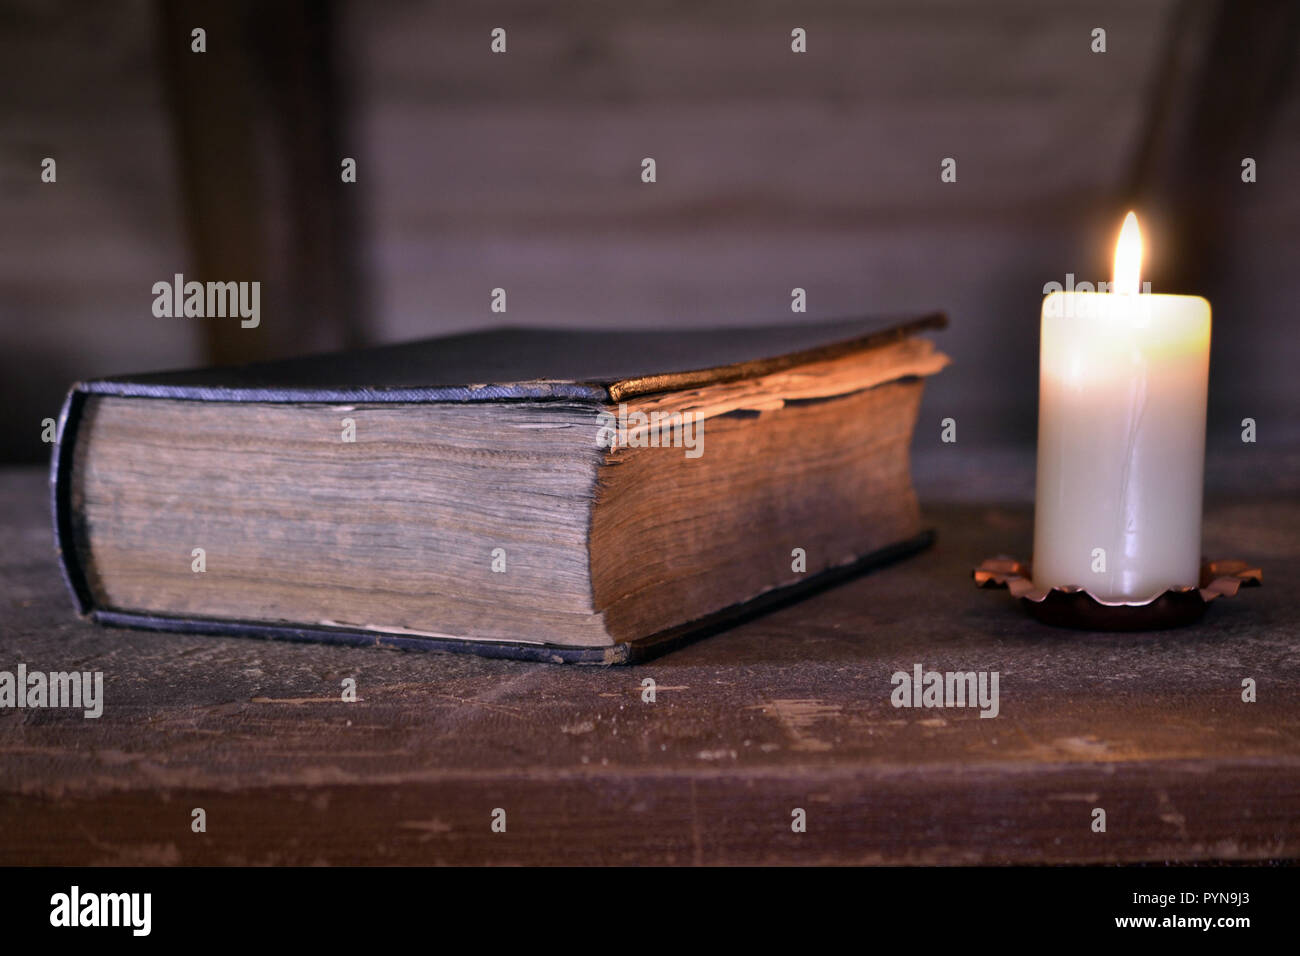 Storybook candela diario libro magico libro Storia antica Foto Stock